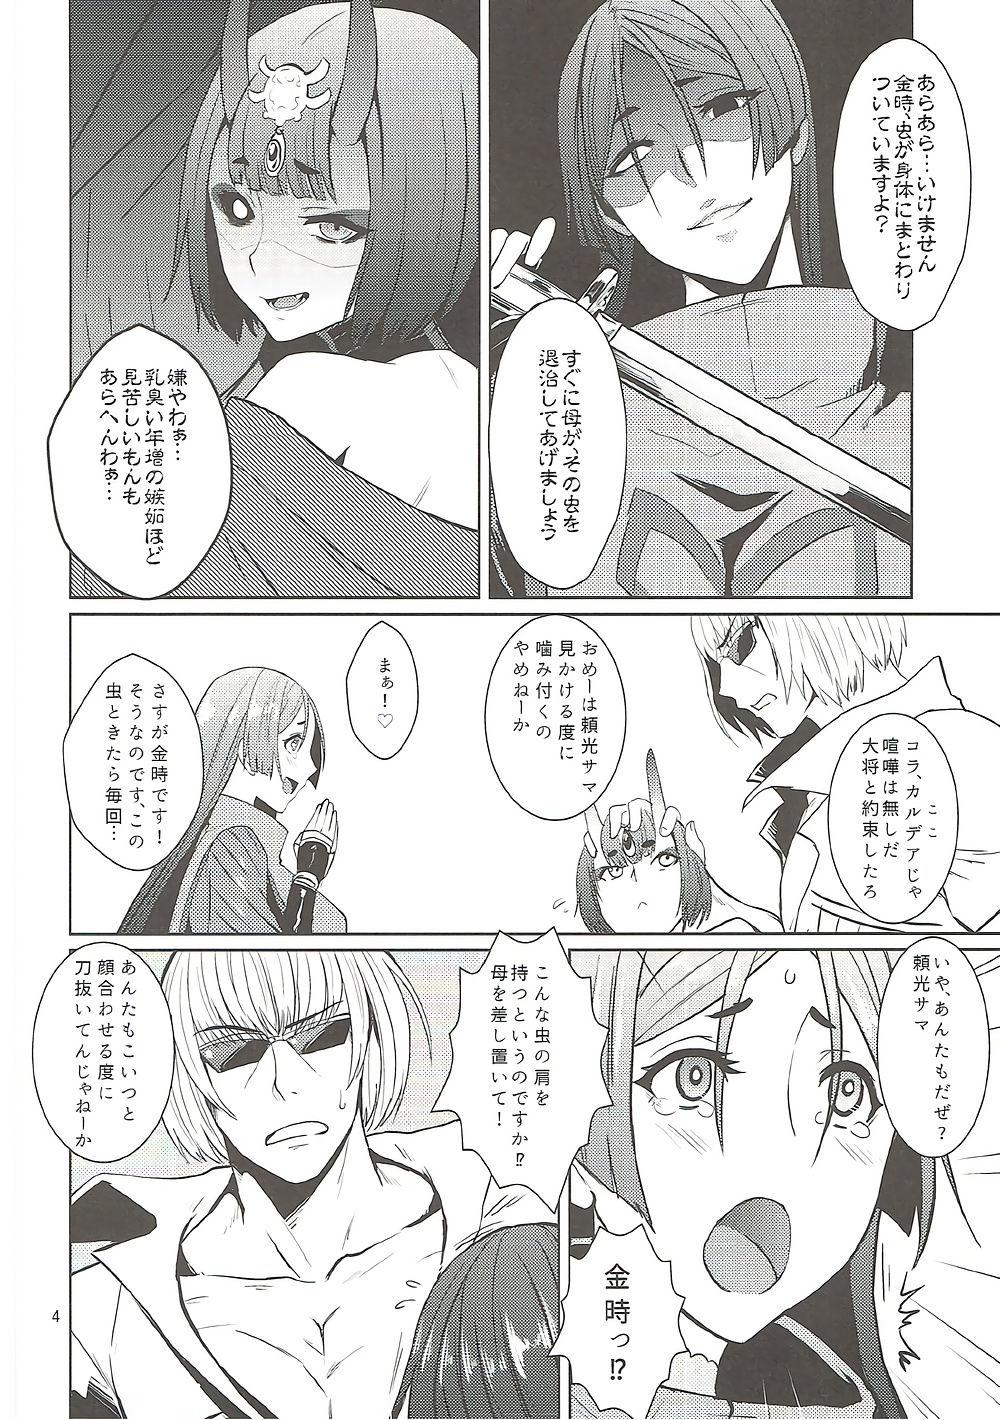 Latex Onigiri Blossom - Fate grand order Blackdick - Page 5